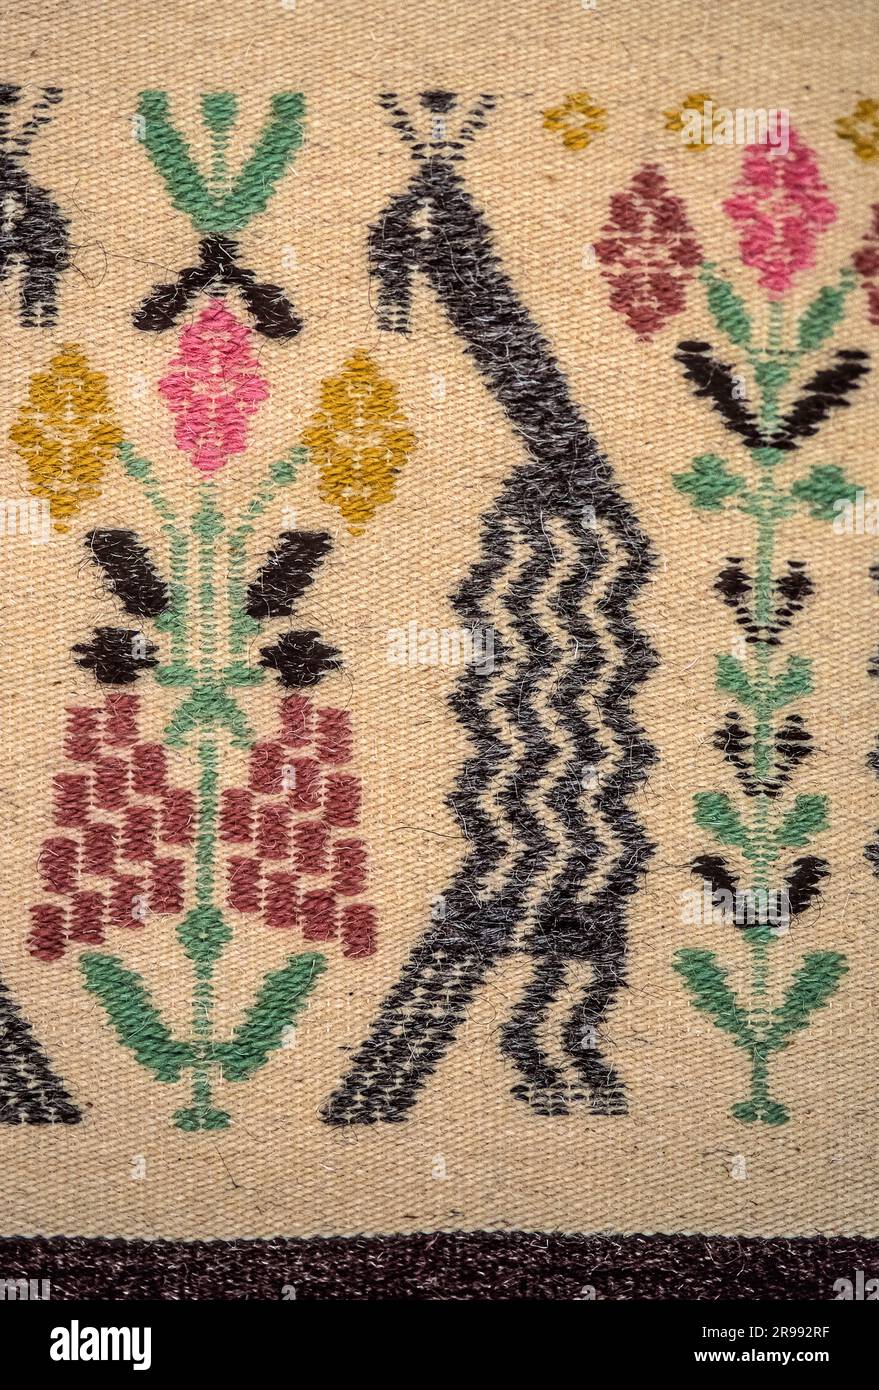 Italia Cerdeña Silì ( Oristano ) - artesanía de alfombras Foto de stock